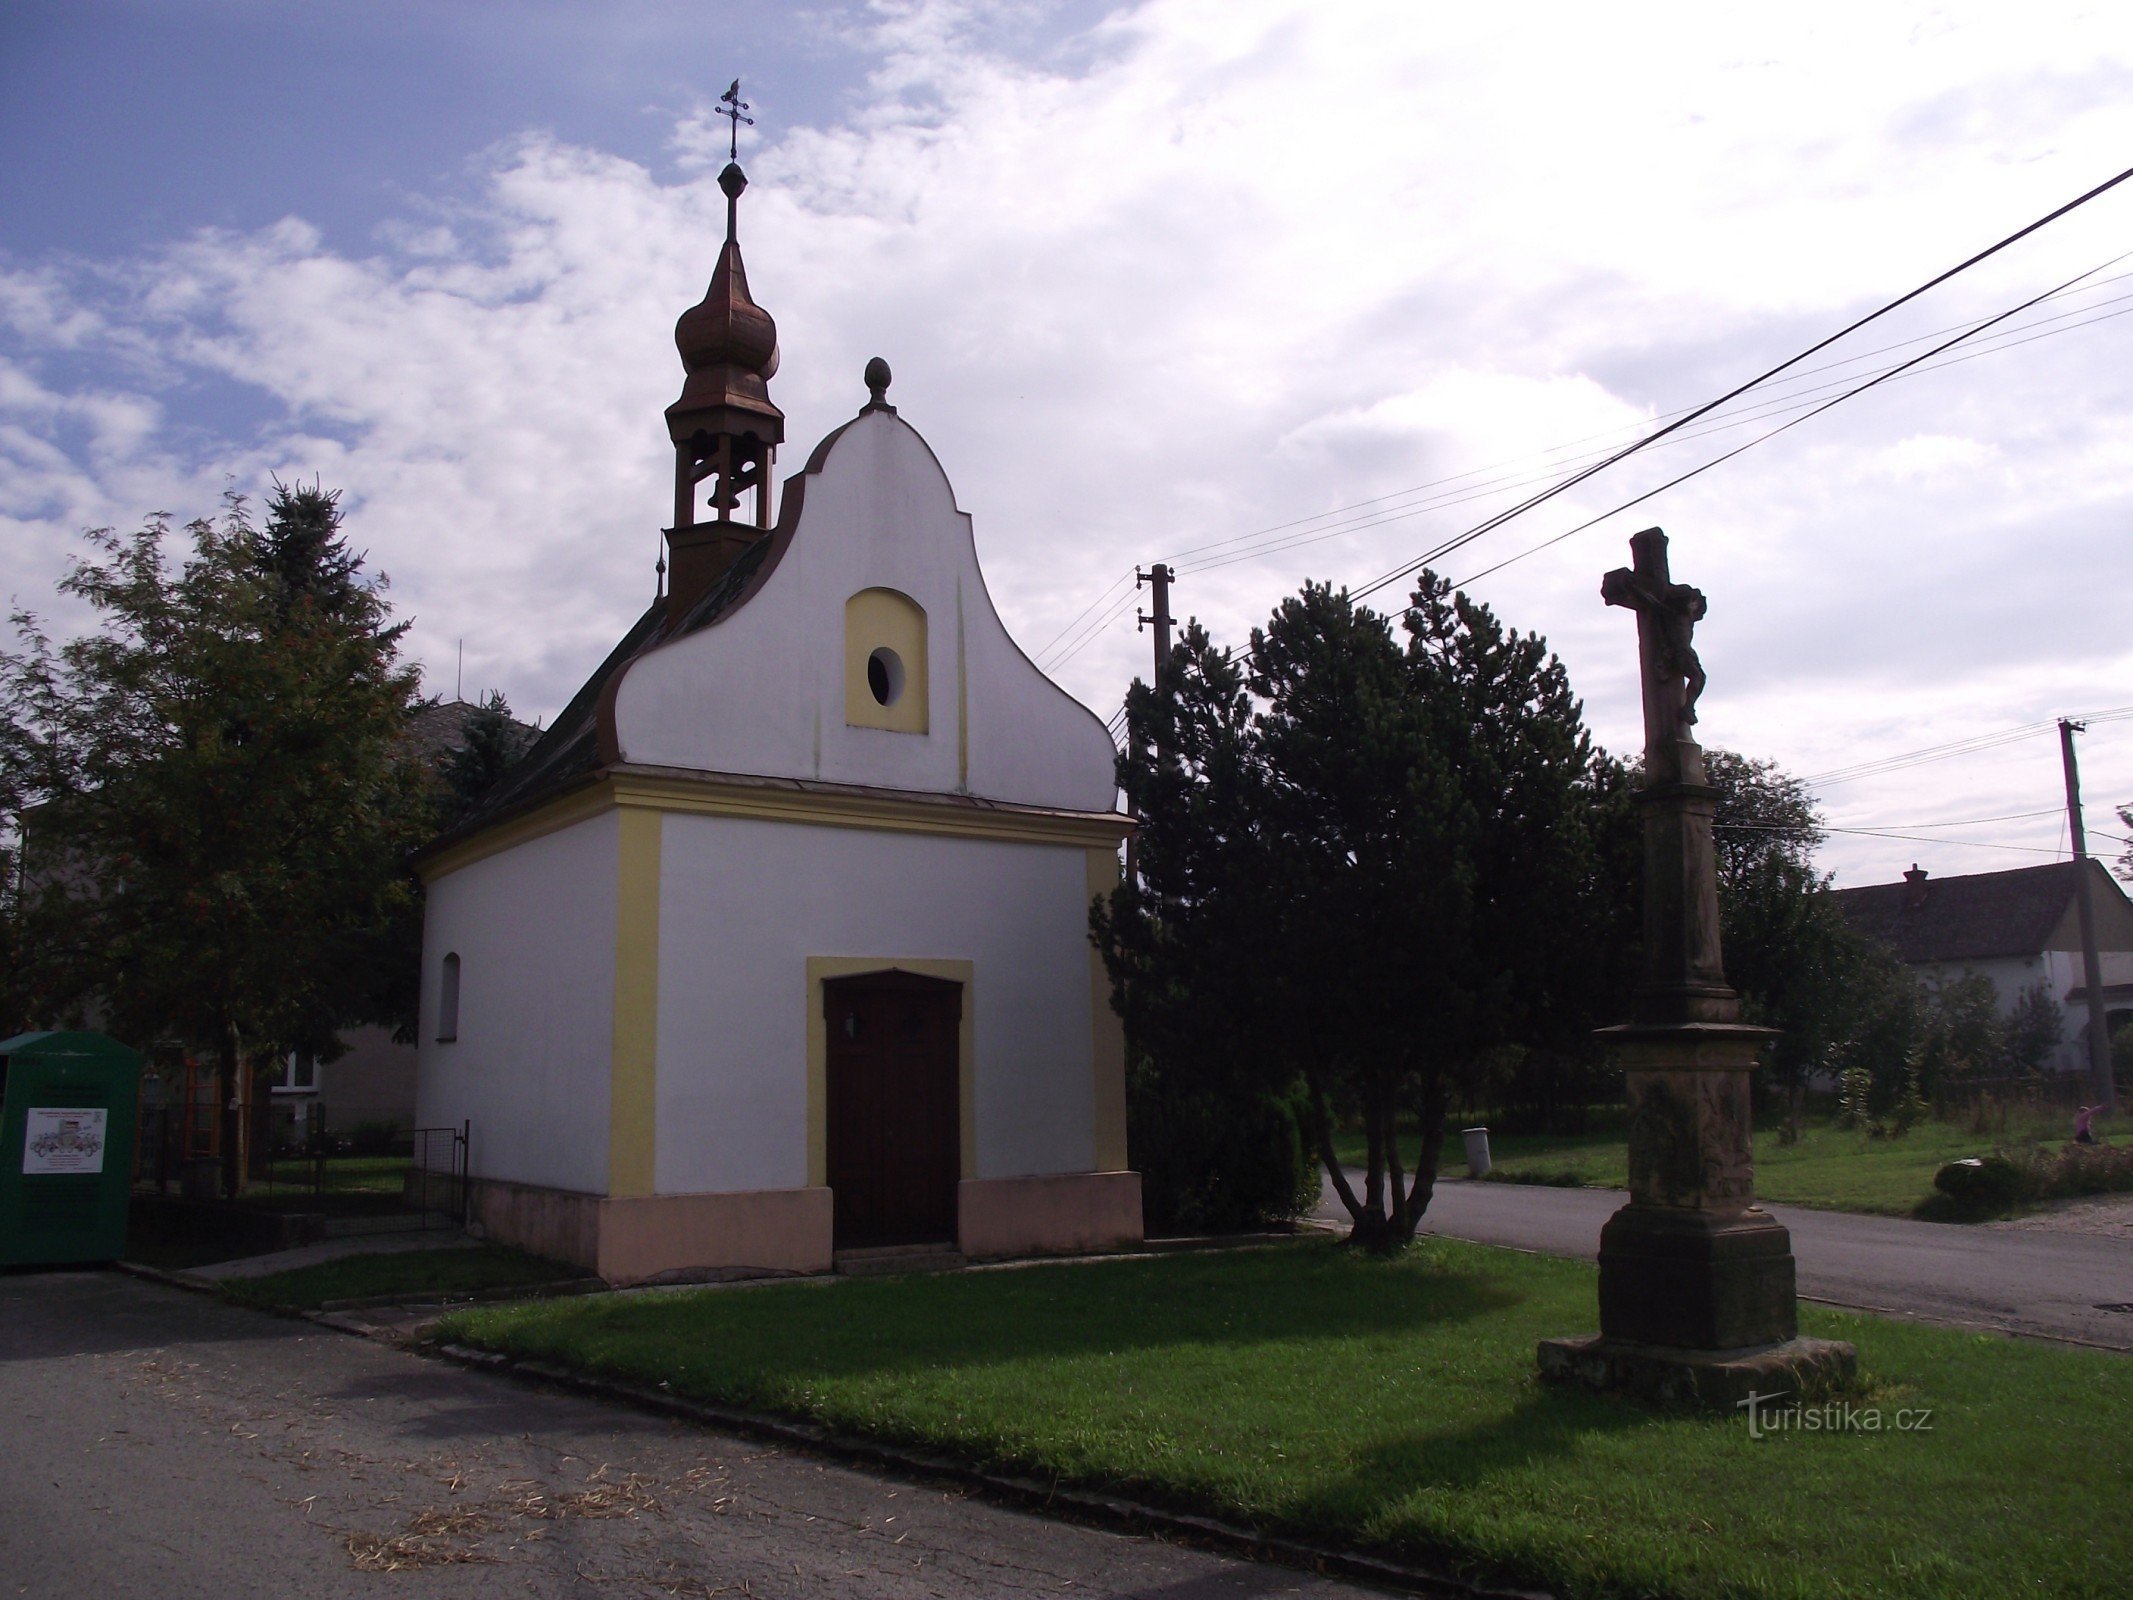 Doubravice (Moravičany) – Den Hellige Treenigheds kapel